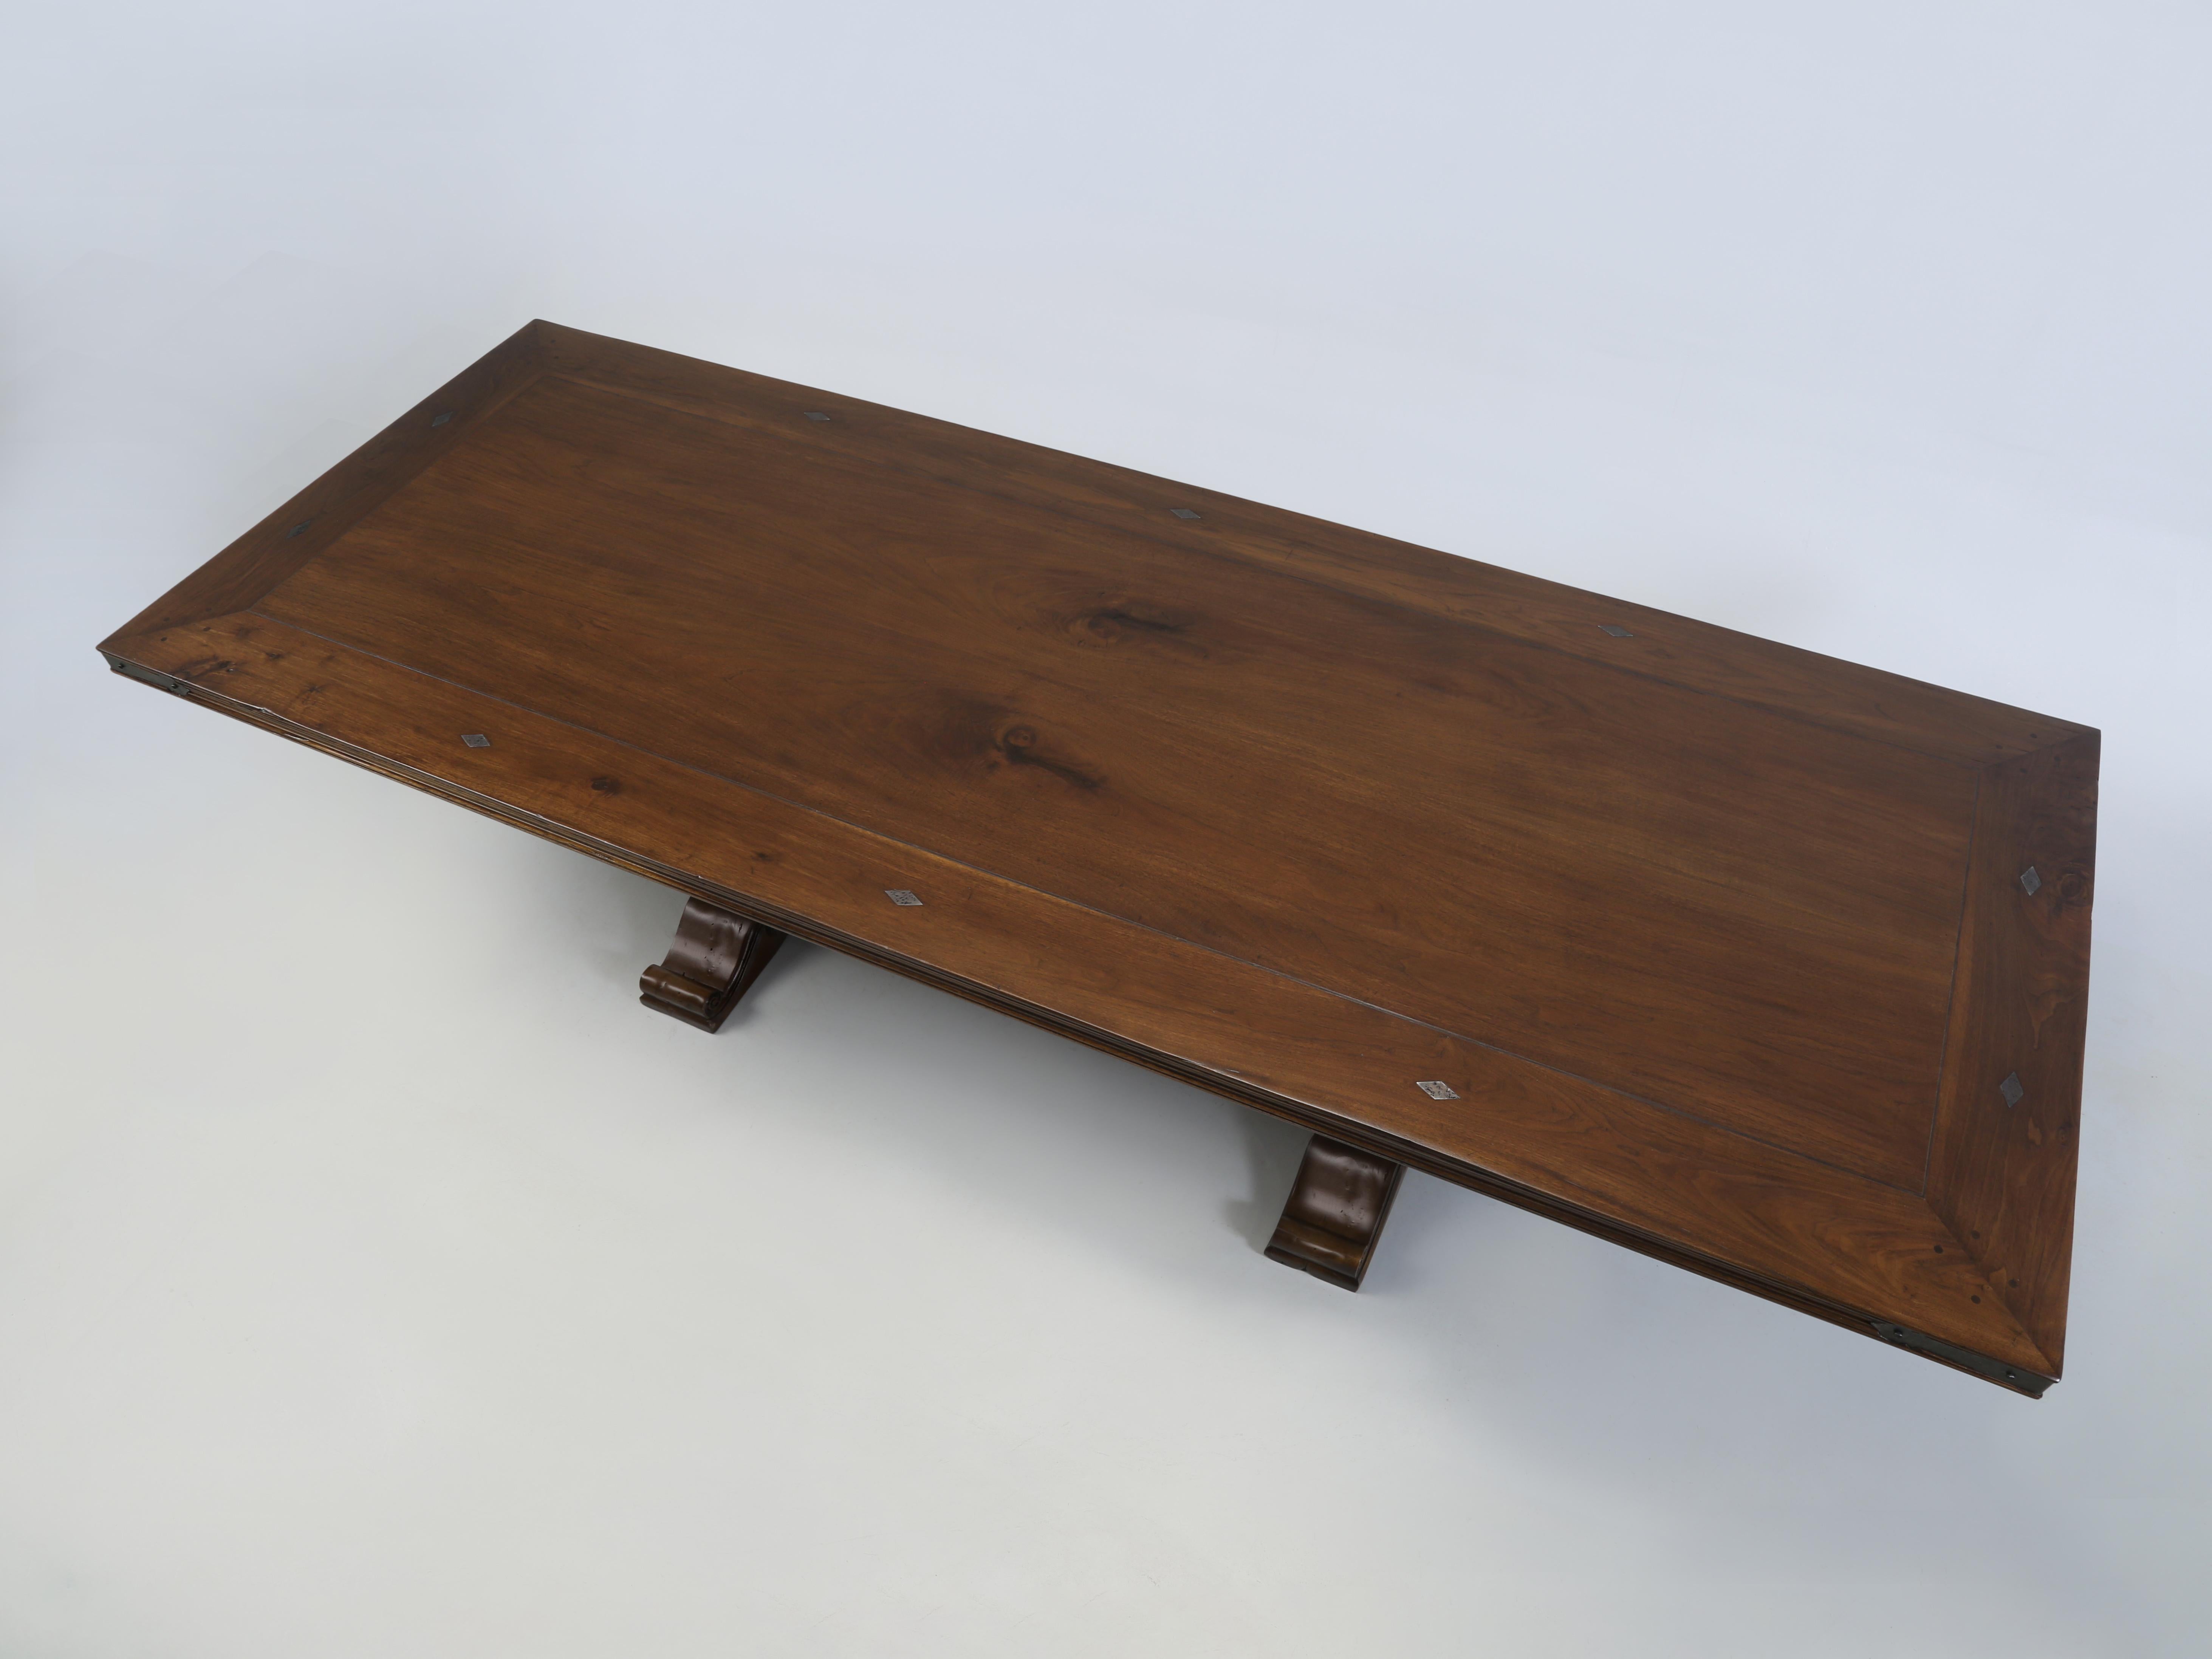 Esstisch aus Nussbaum im französischen Landhausstil, hergestellt von Old Plank in unserer Holzbearbeitungsabteilung und natürlich in jeder gewünschten Größe und Ausführung erhältlich. Auf diesen klassischen Esstisch aus Nussbaum im französischen